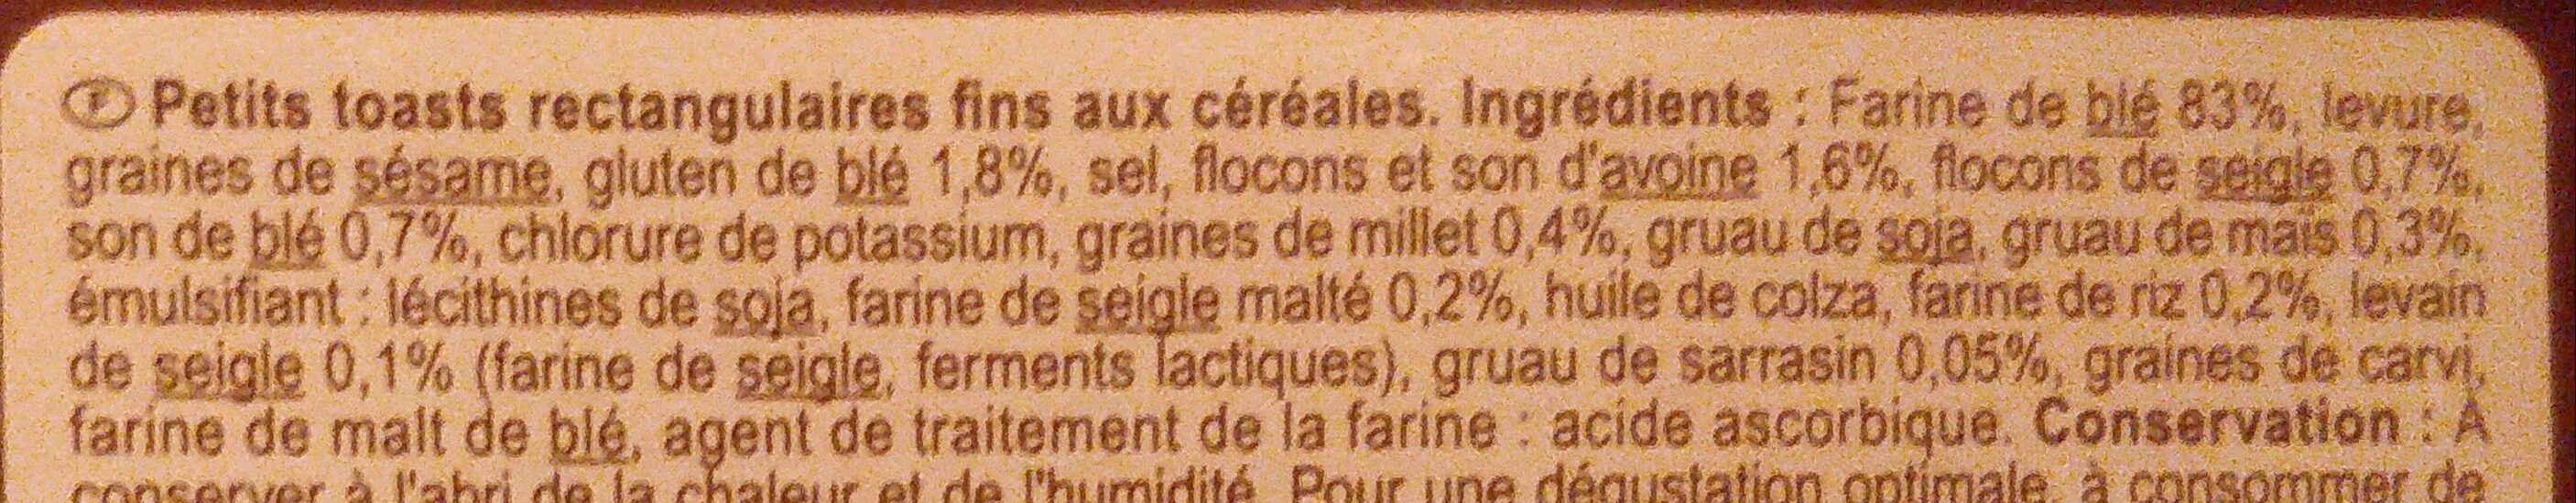 Toasts Fins Multicéréales - Ingrédients